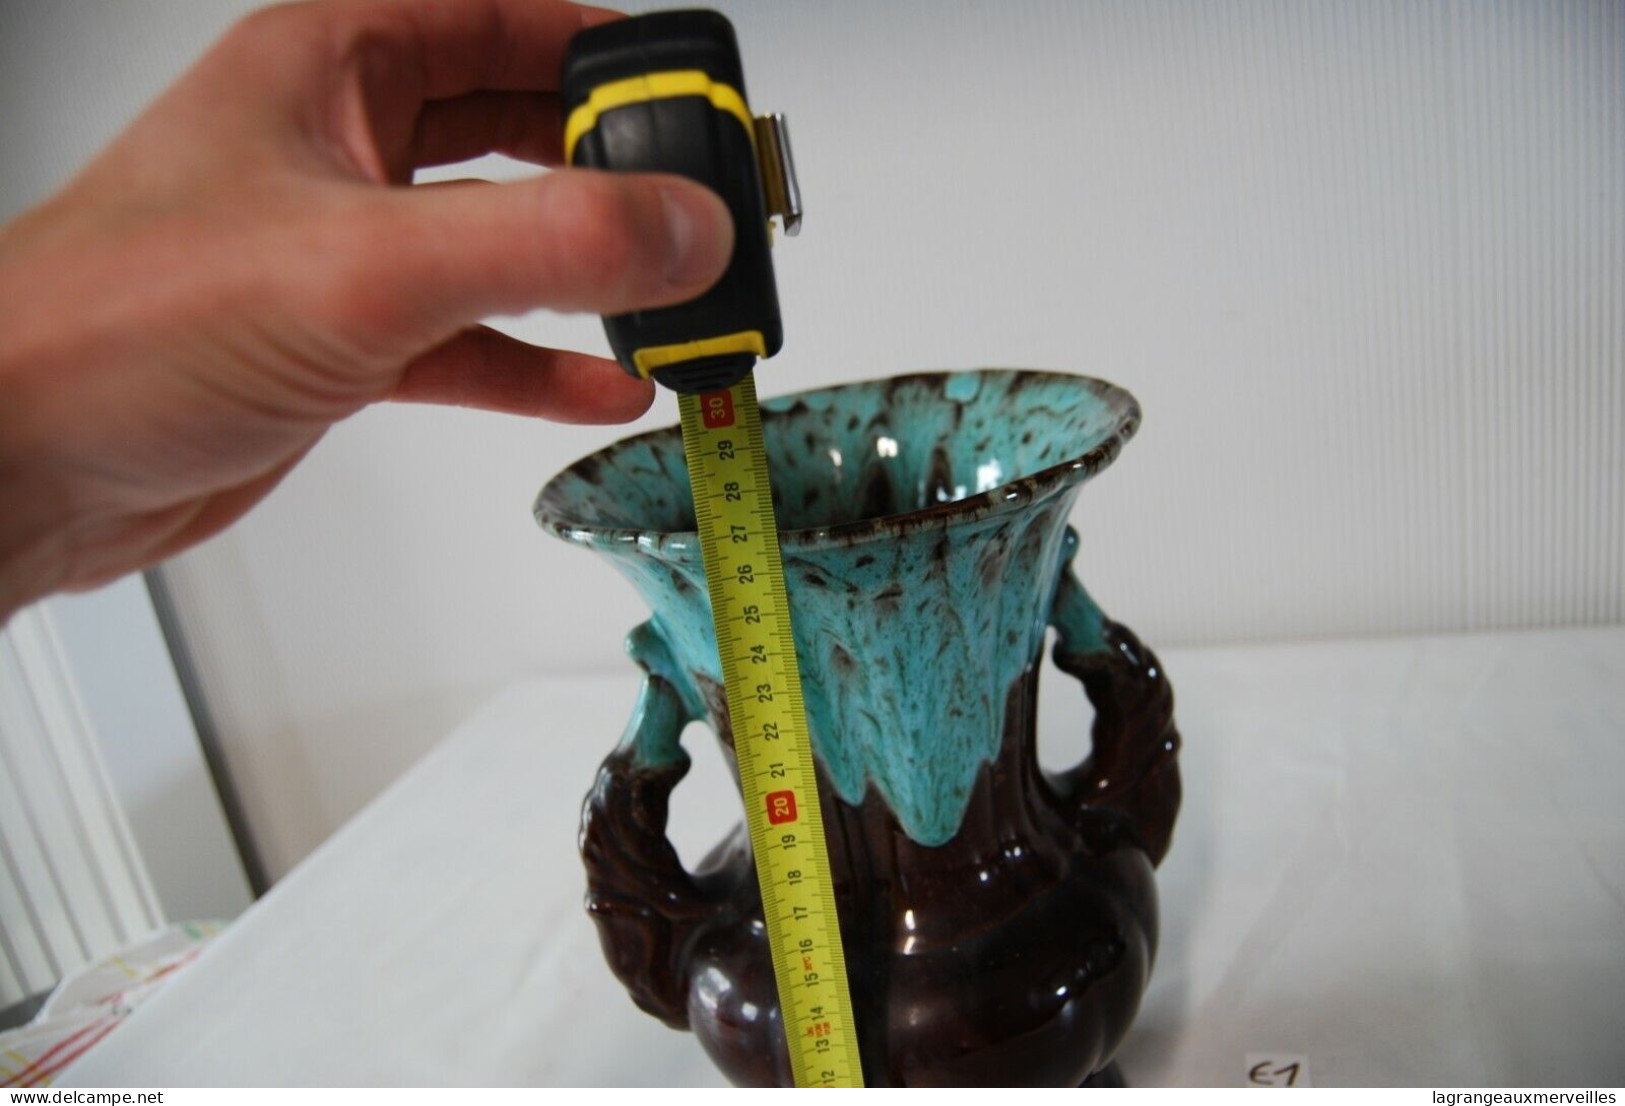 E1 Ancien Vase - Verre De Coulée - Vasen